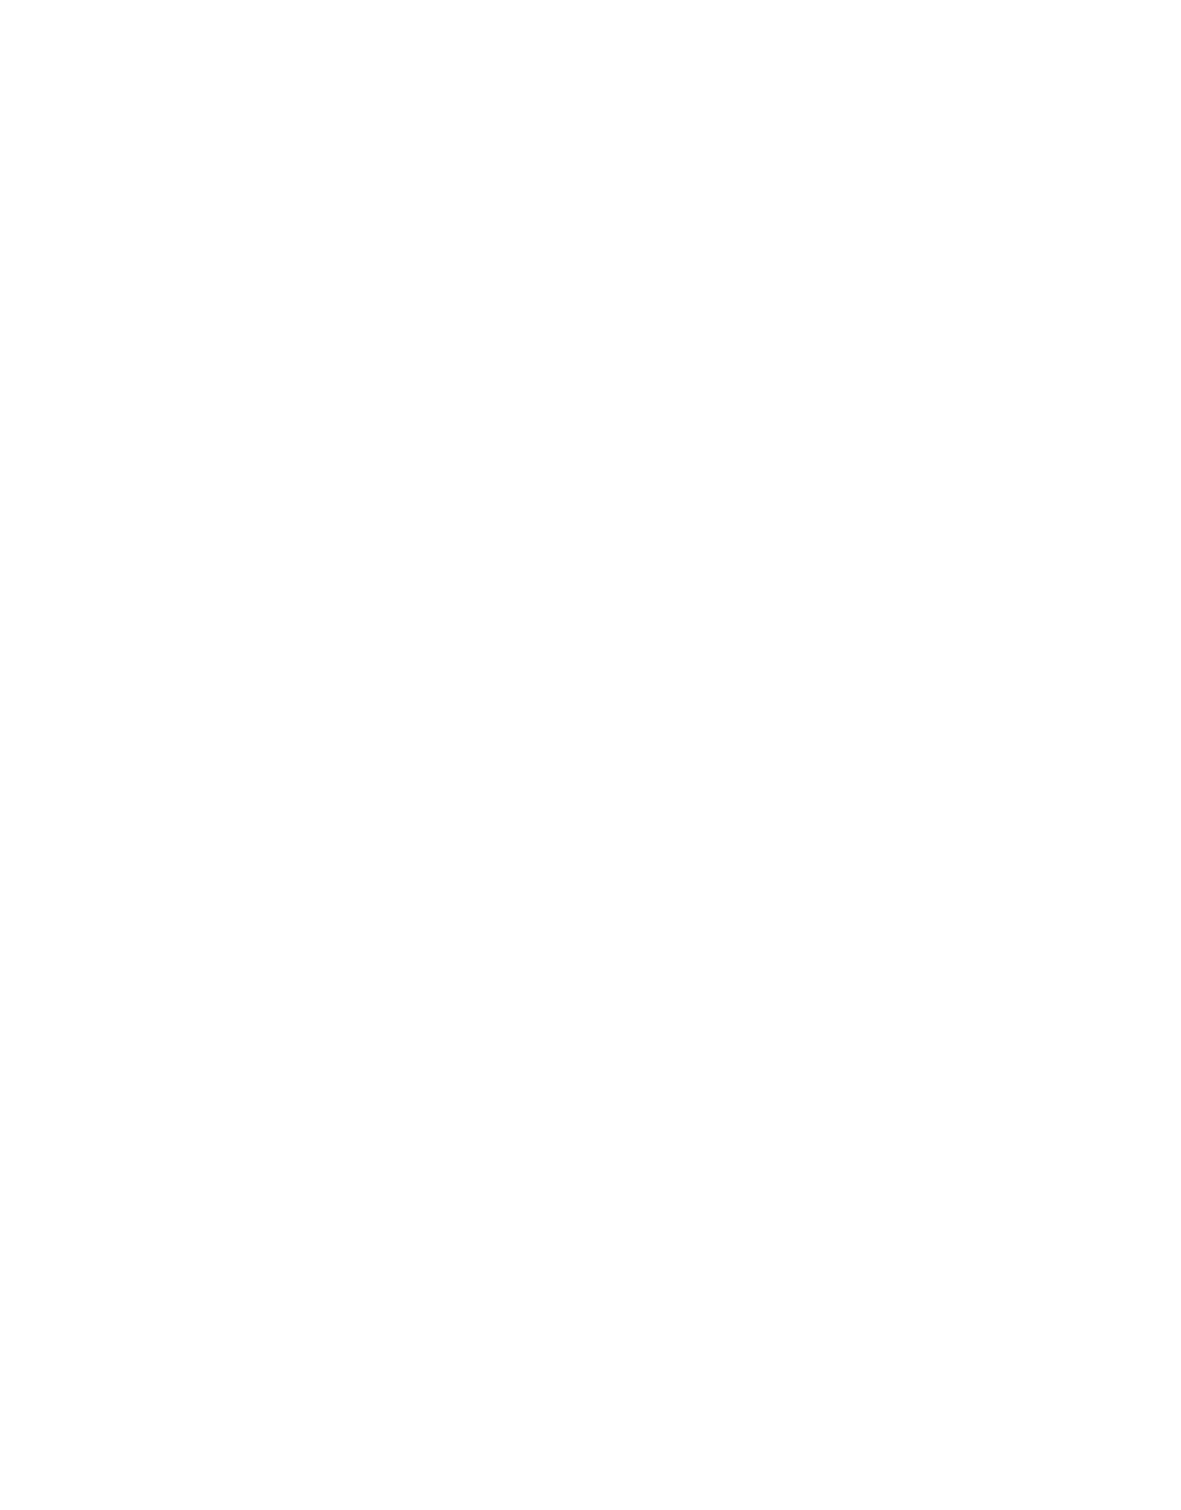 Obayashi logo large for dark backgrounds (transparent PNG)